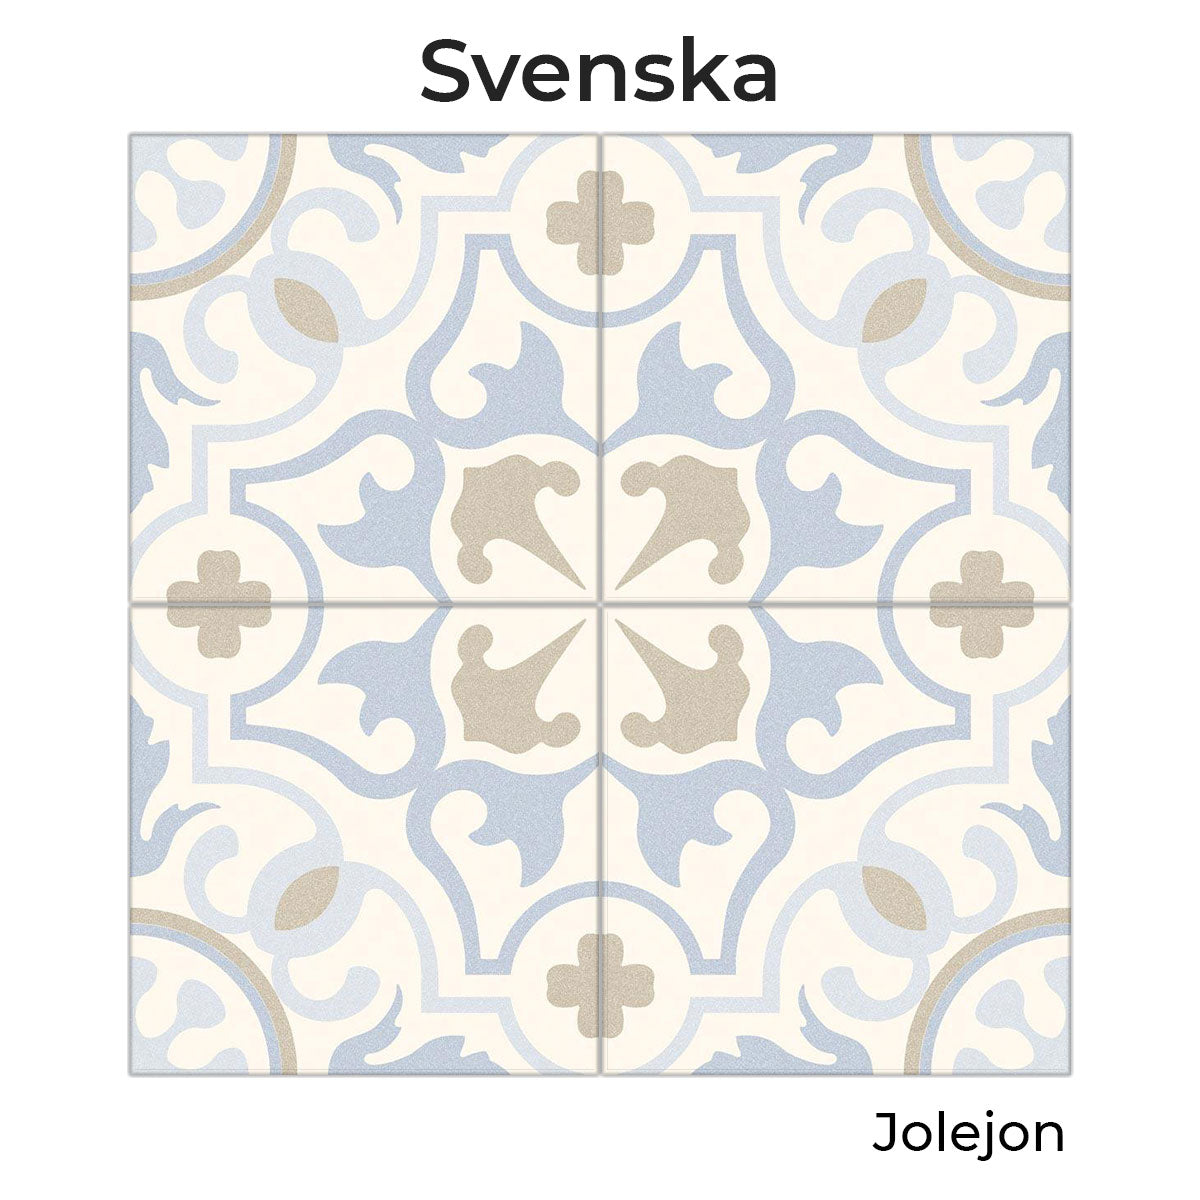 Vives Svenska Jolejon Cement Effect Encaustic Porcelain Tile 20x20cm Matt